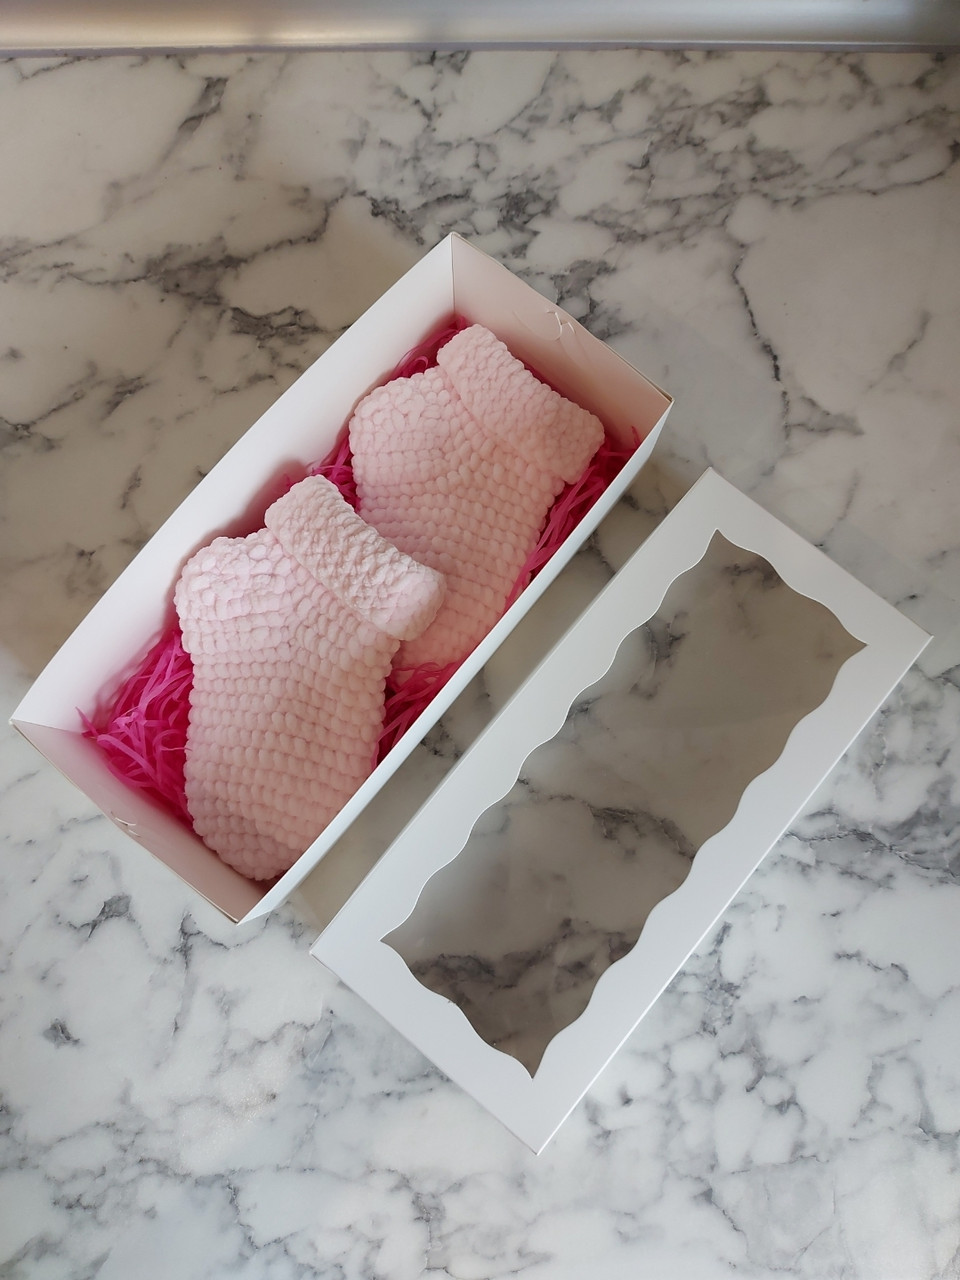 Шкарпетки дитячі вязані гачком рожеві на 1 рік, подарунковий набір для дівчинки